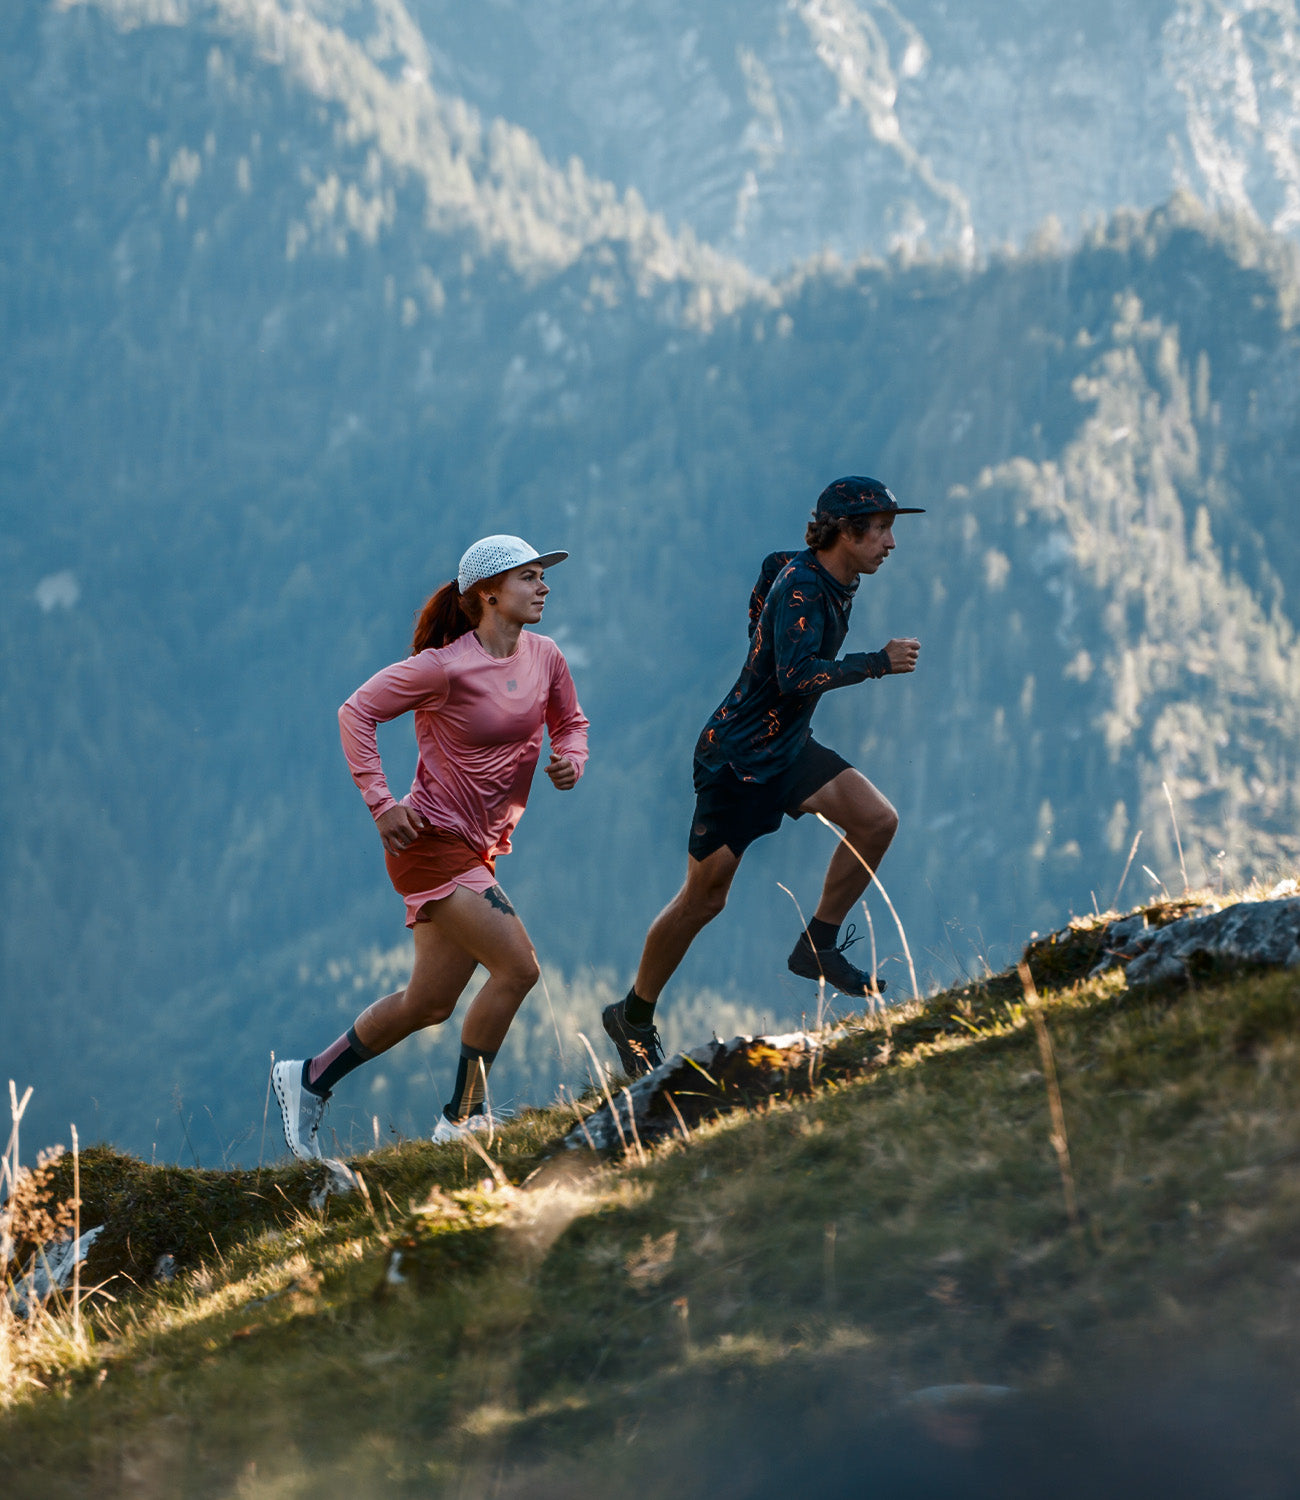 RUN WTF Running Apparel - High Performance Laufbekleidung für Männer und Frauen, die Wert auf Style, Funktionalität und Fairness legen. Hergestellt in Europa.